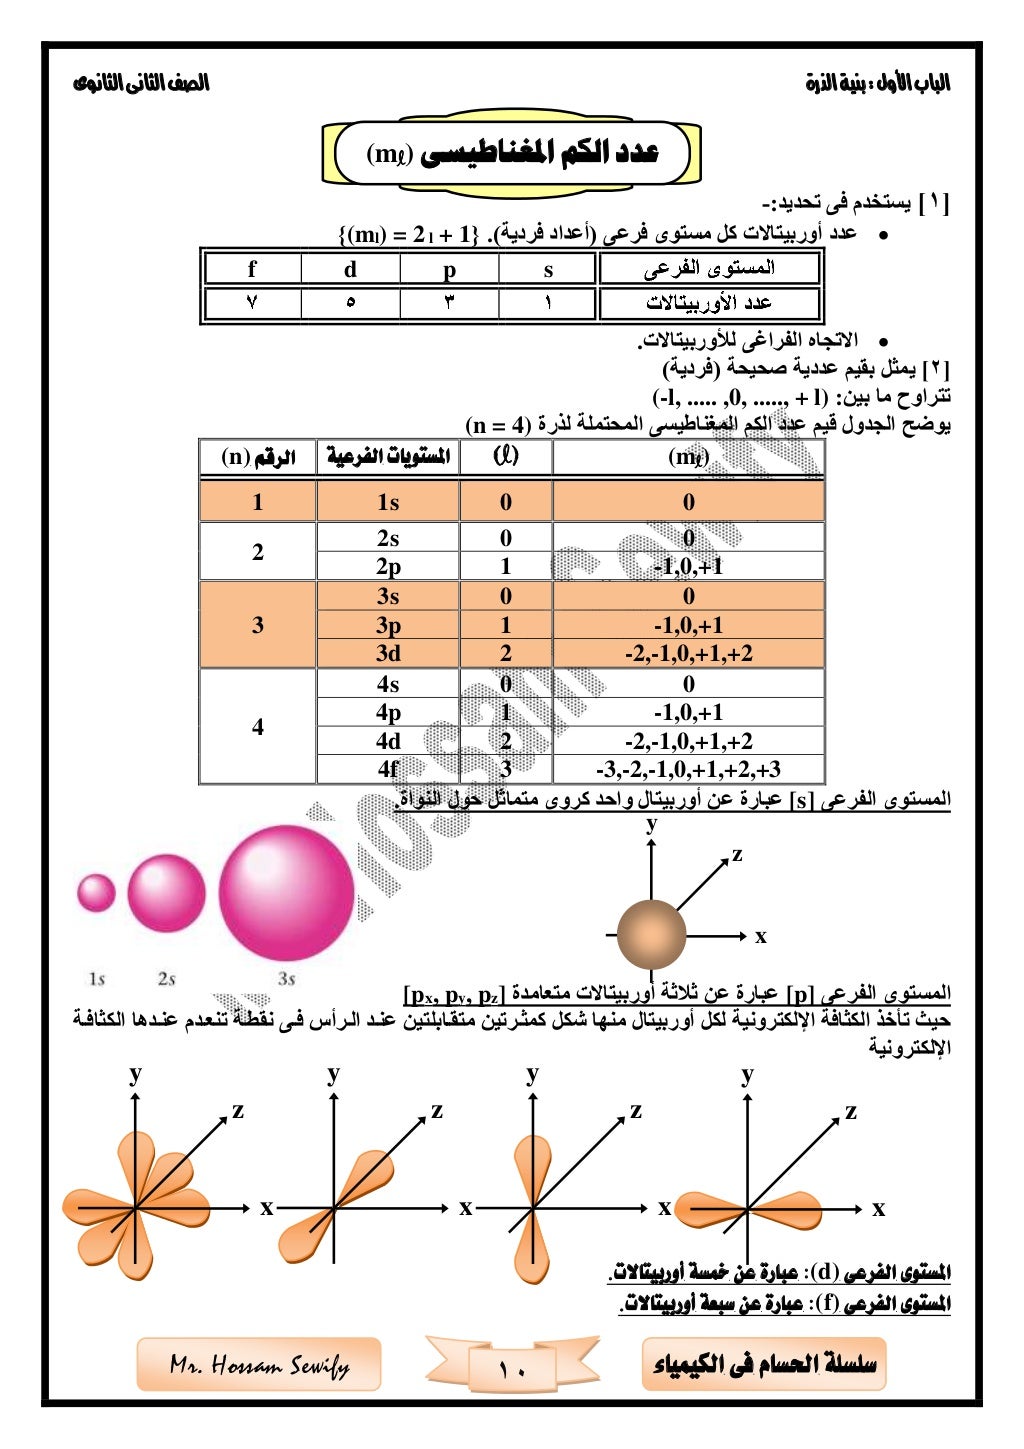 ‫األول‬‫الباب‬‫الذرة‬‫بنية‬:‫الثانوى‬‫الثانى‬‫الصف‬
10 ‫الكيمياء‬ ‫فى‬ ‫احلسام‬ ‫سلسلة‬Mr. Hossam Sewify
[1]‫يستخدم‬:‫تحدي...